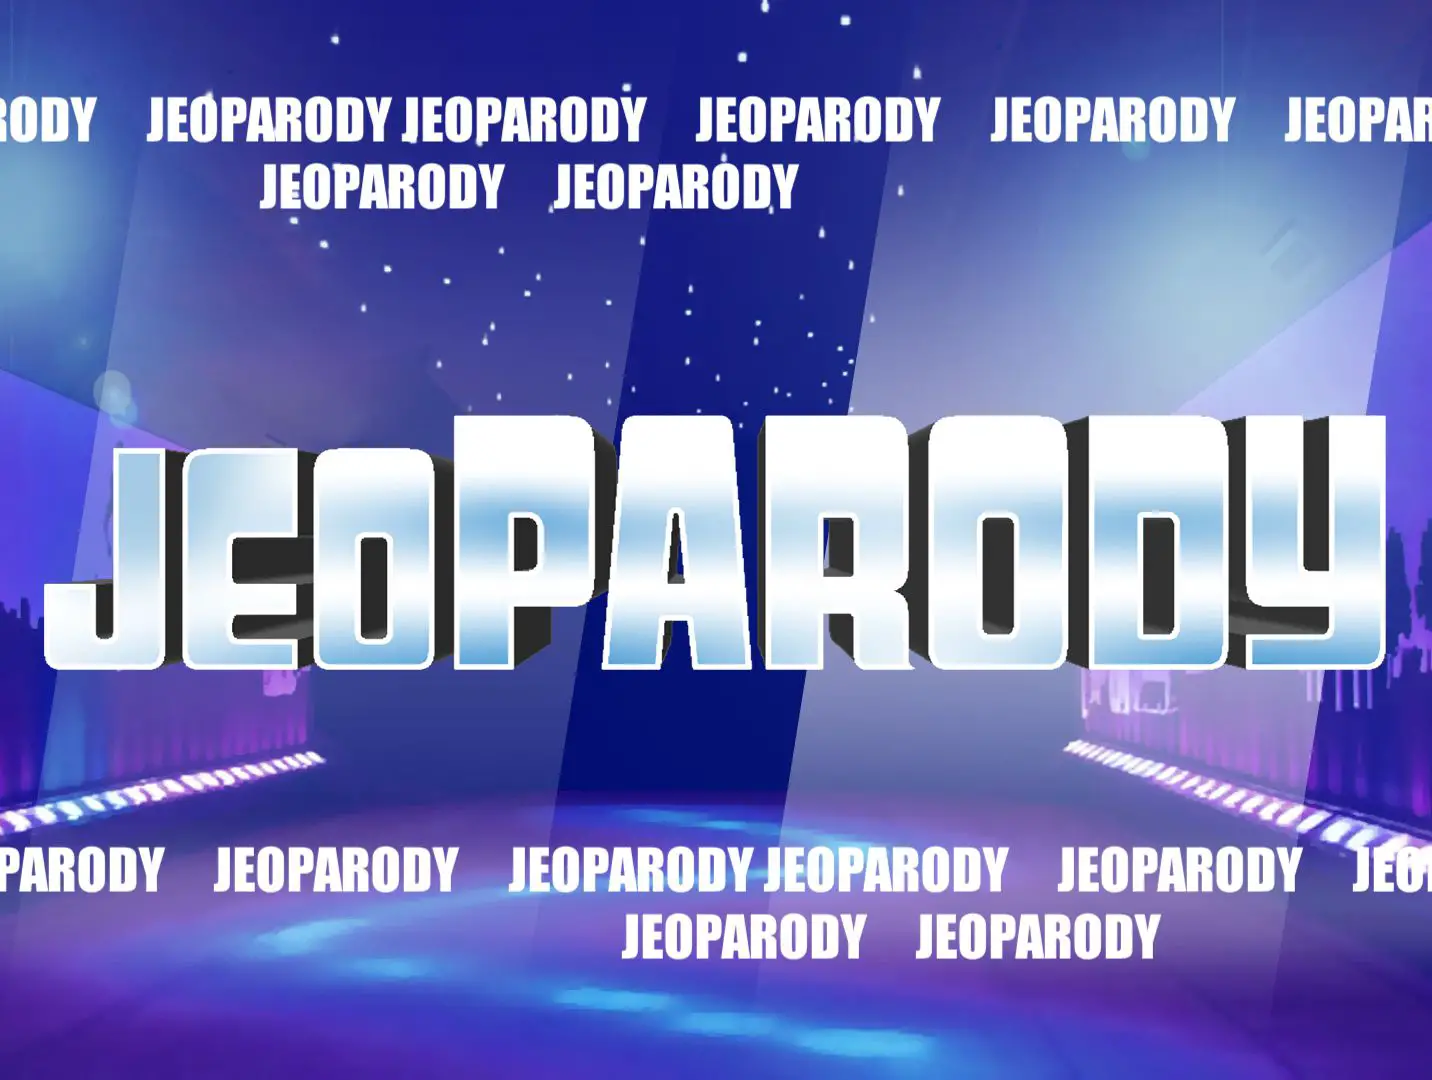 Uma tela inicial do modelo Jeopardy